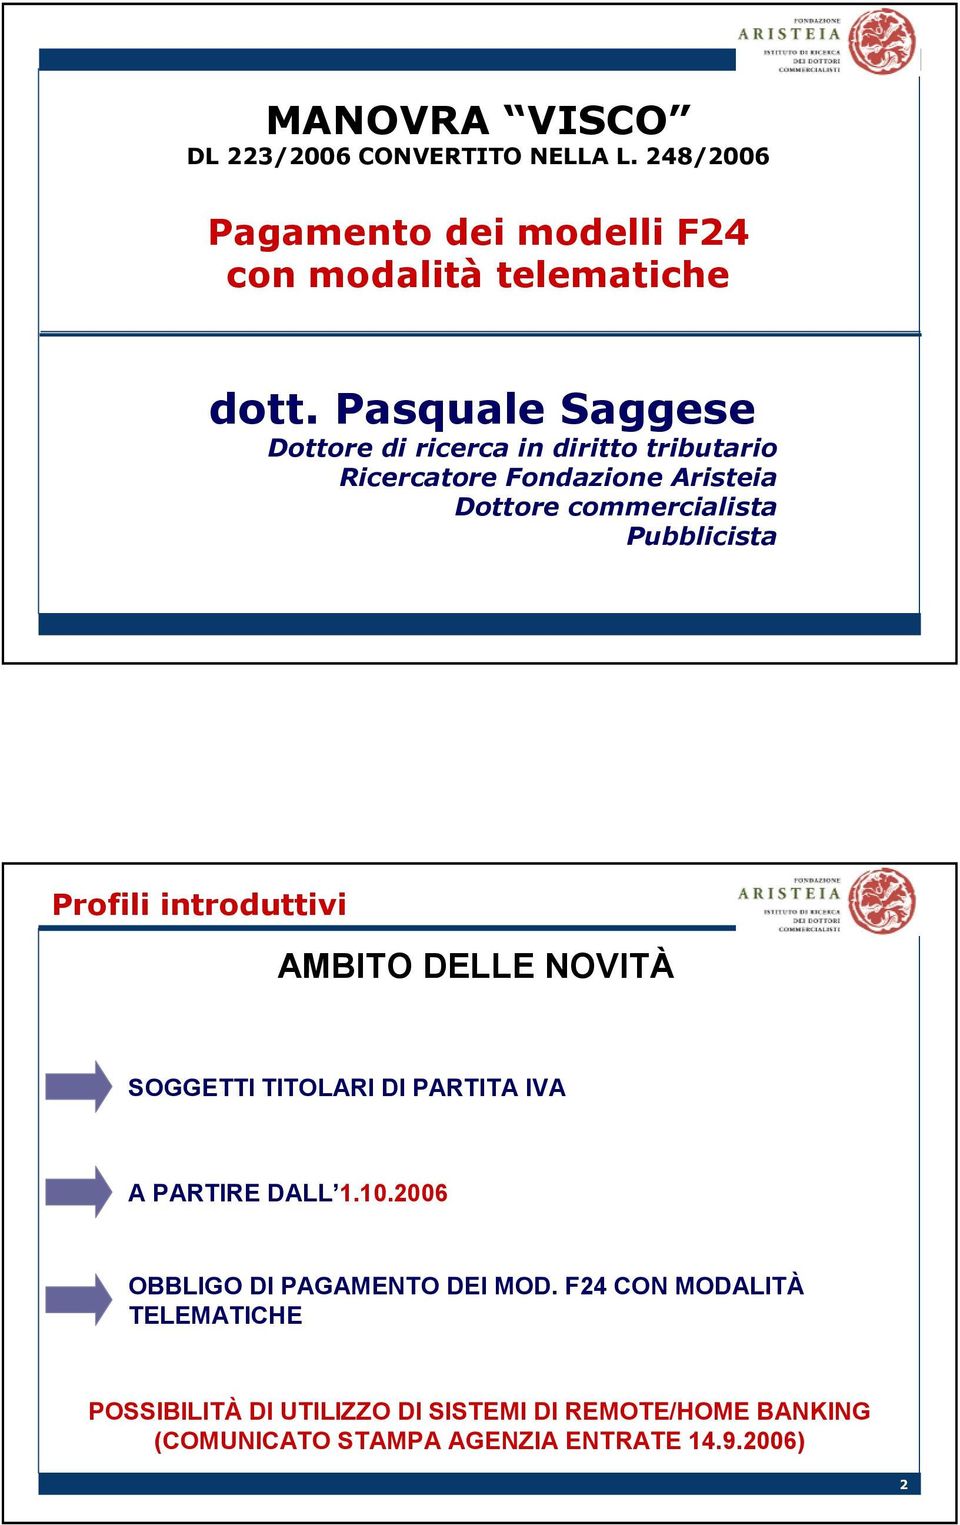 Profili introduttivi AMBITO DELLE NOVITÀ SOGGETTI TITOLARI DI PARTITA IVA A PARTIRE DALL 1.10.